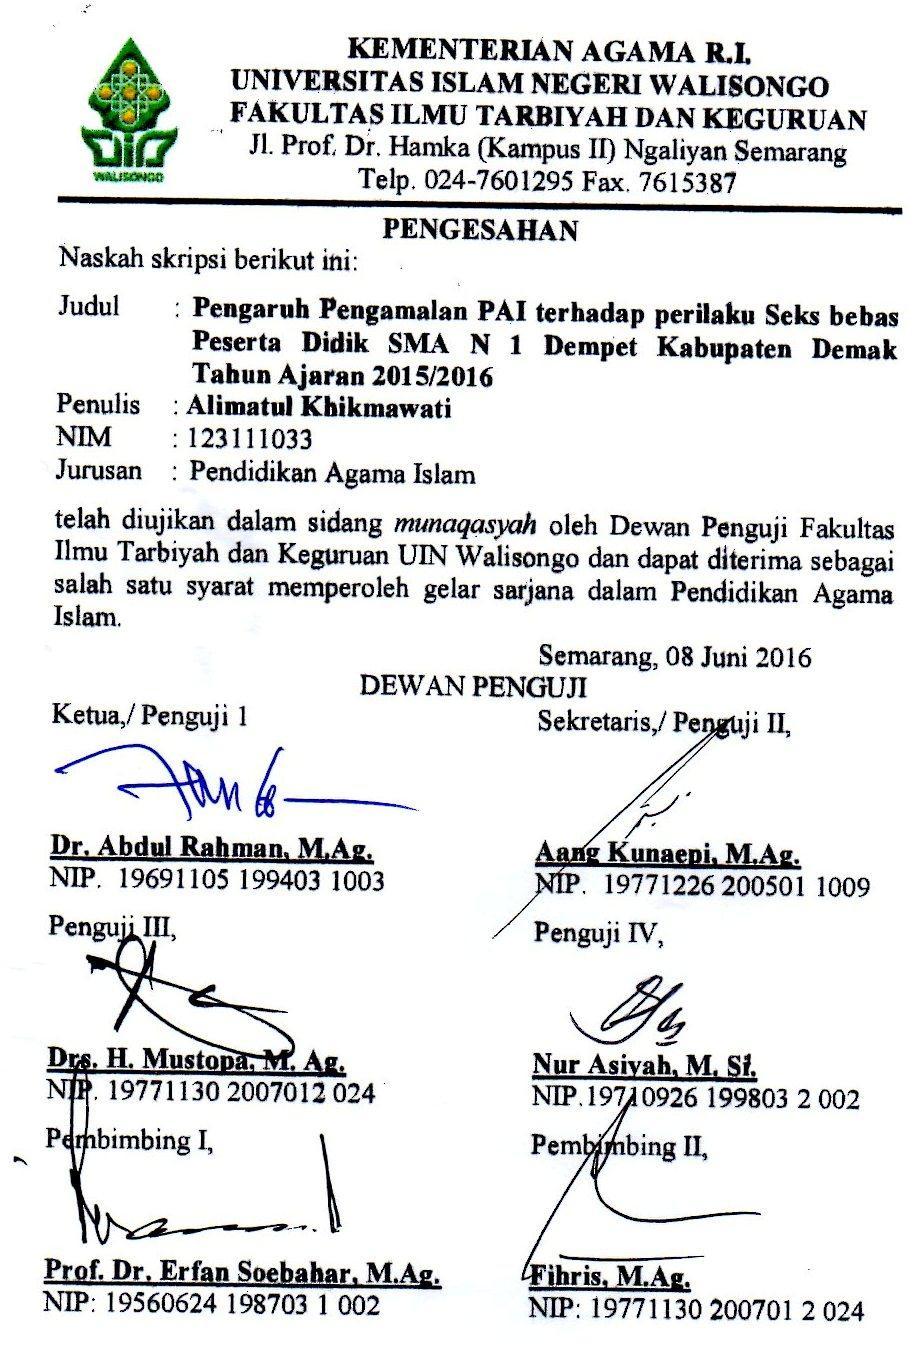 Naskah skripsi berikut ini: KEMENTERIAN AGAMA R.I. UNIVERSITAS ISLAM NEGERI WALISONGO FAKULTAS ILMU TARBIYAH DAN KEGURUAN Jl. Prof. Dr. Hamka (Kampus II) Ngaliyan Semarang Telp. 024-7601295 Fax.